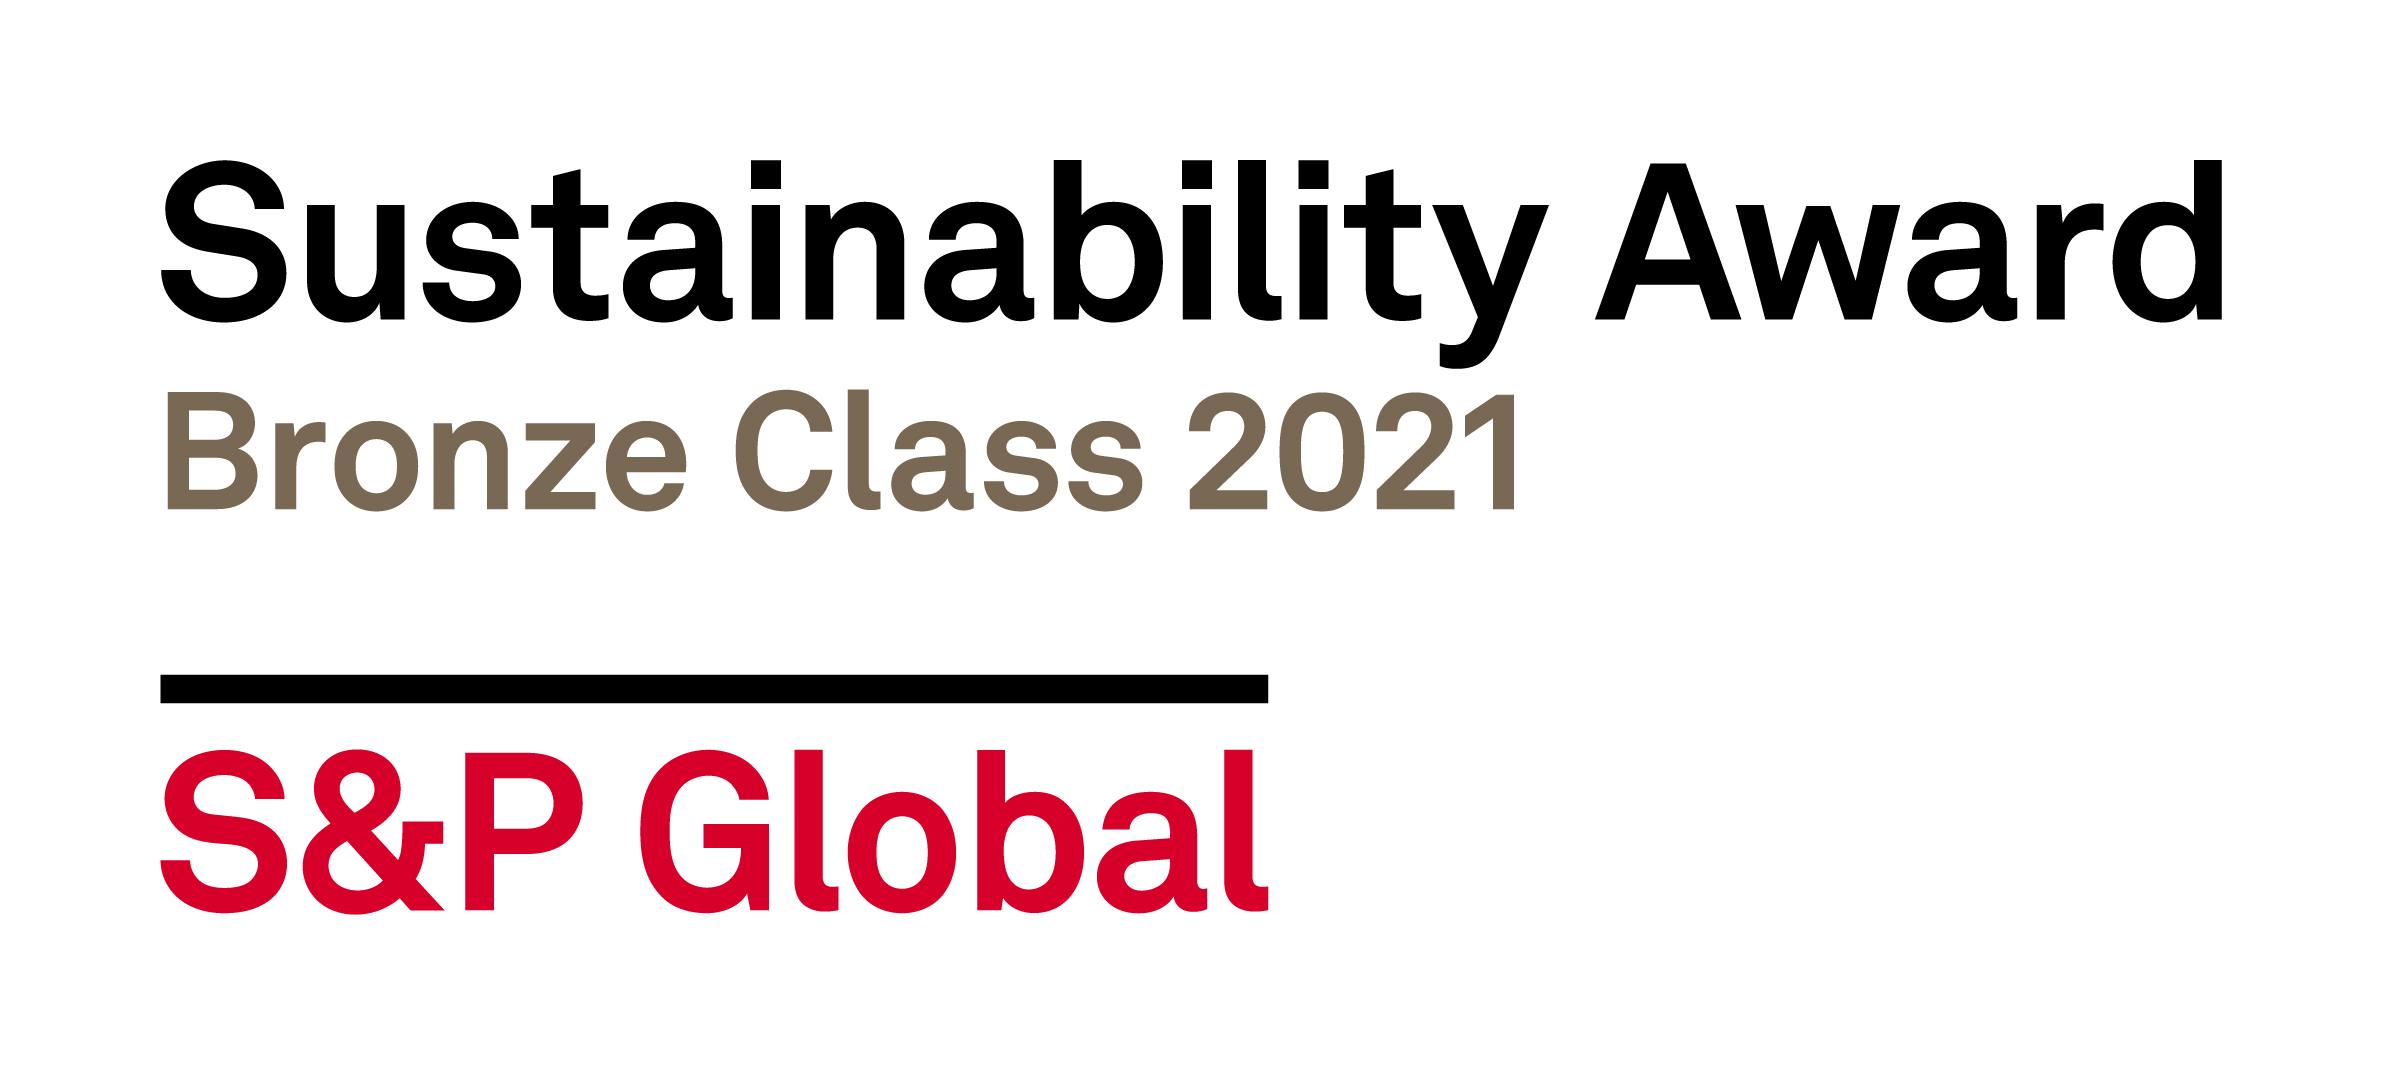 spg-sustainability_awardx2.jpg